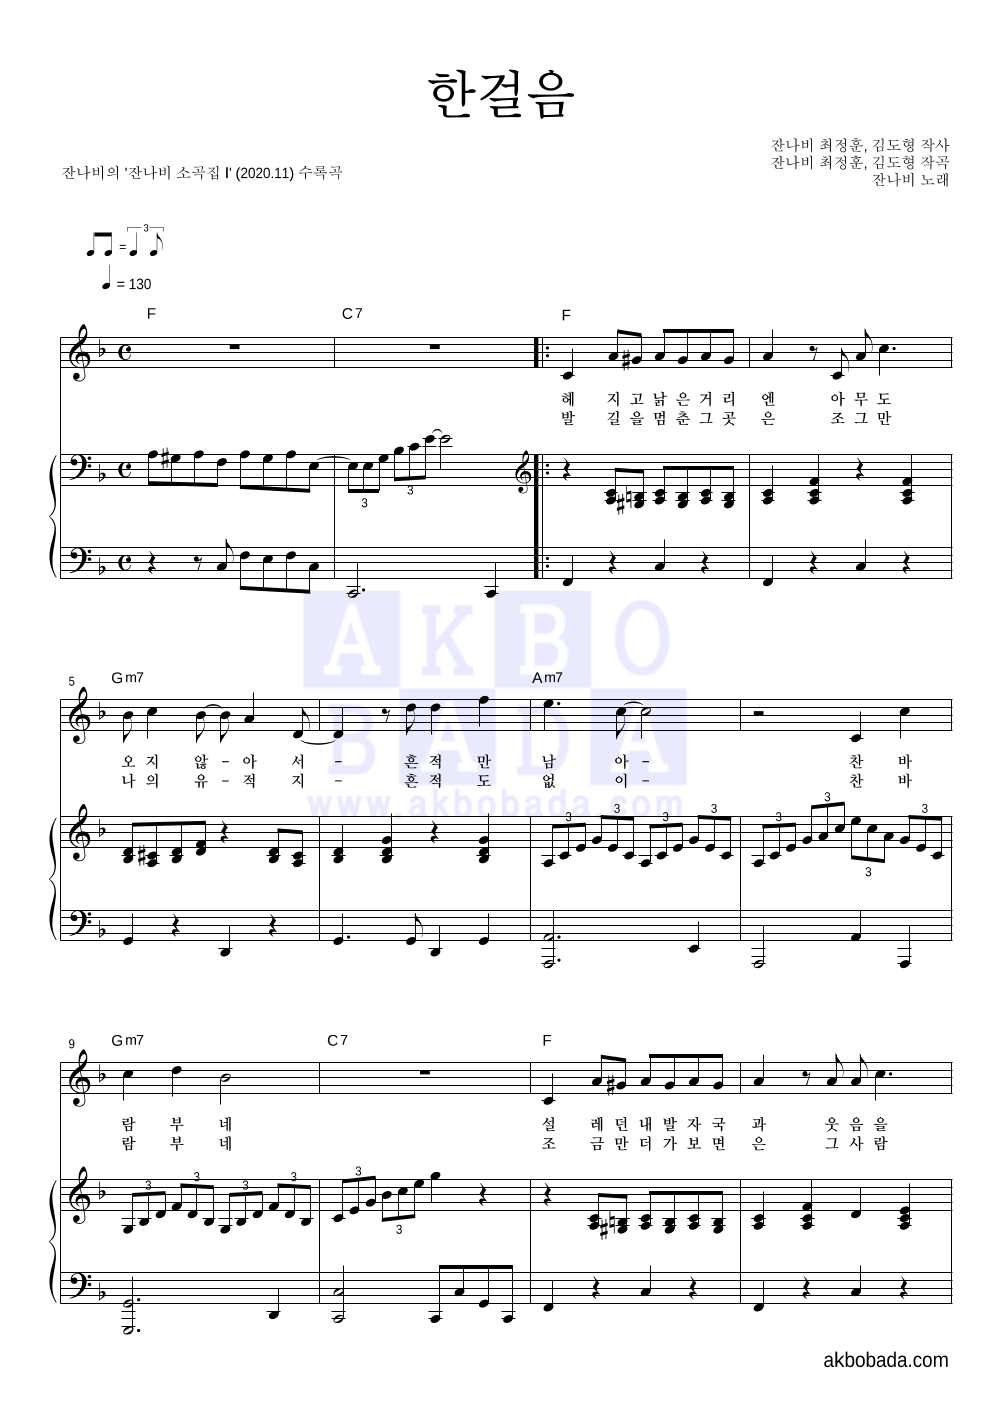 잔나비 - 한걸음 피아노 3단 악보 